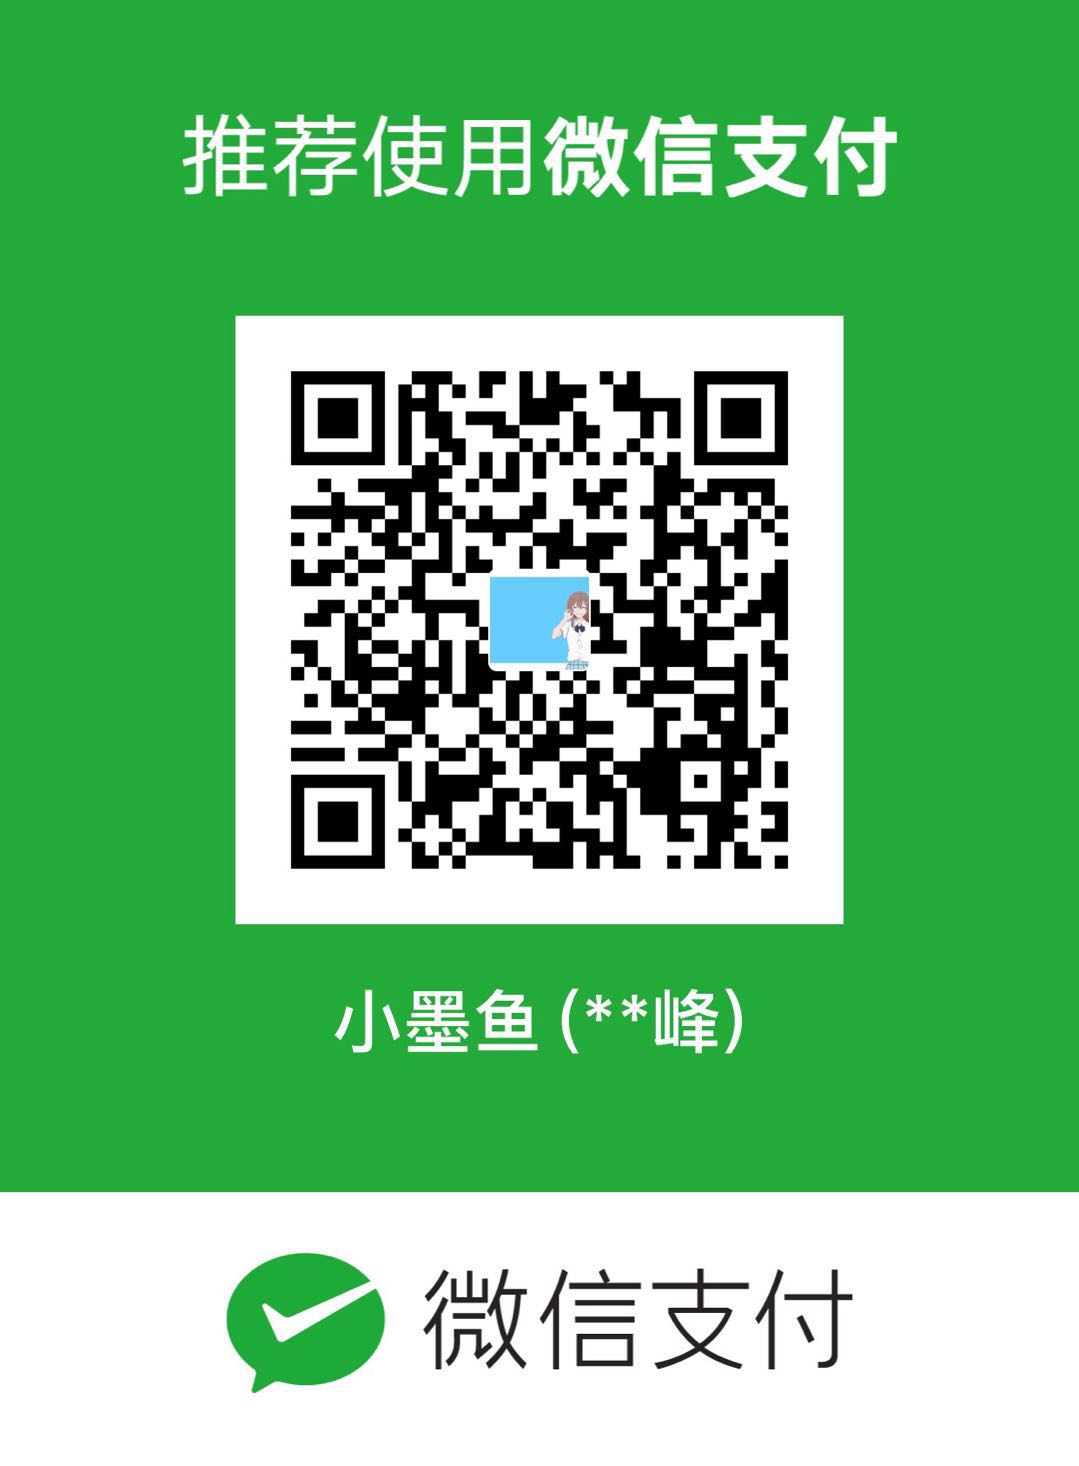 小墨鱼 WeChat Pay